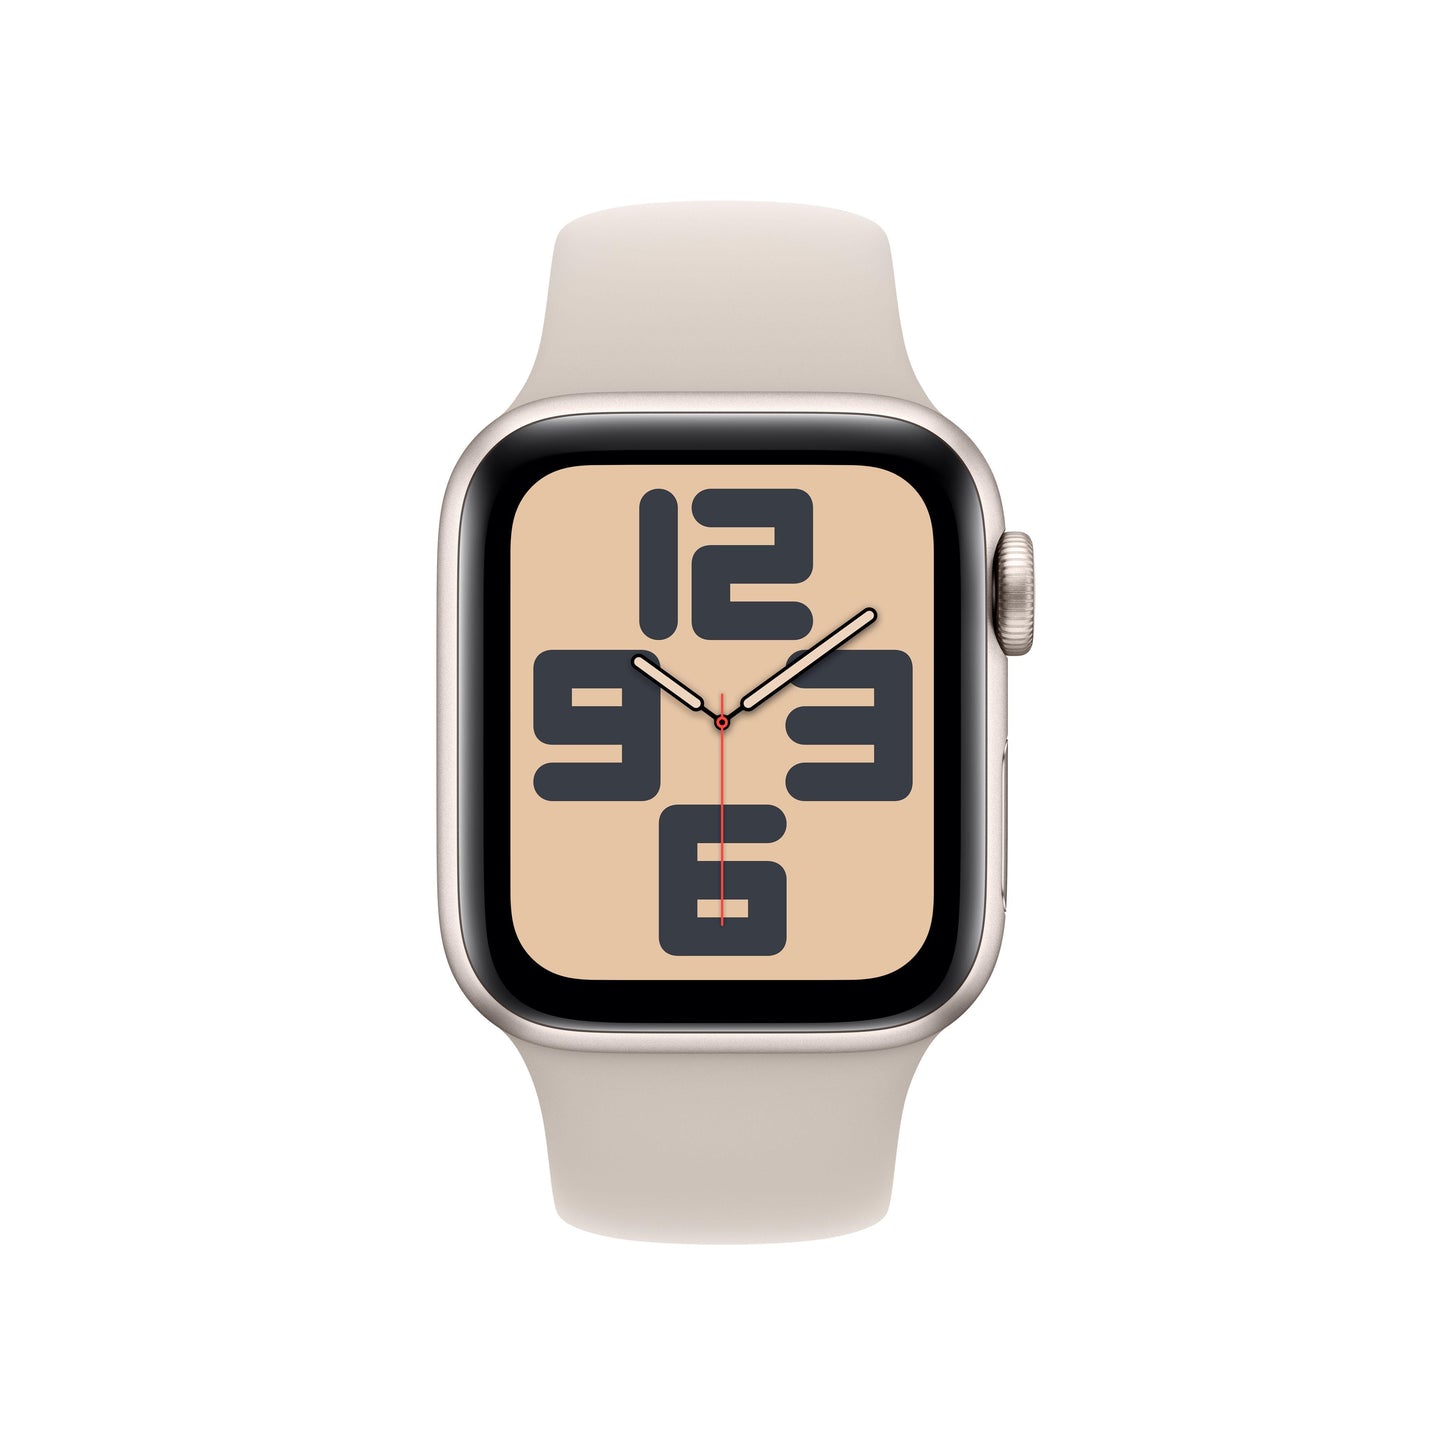 Apple Watch SE (GPS + Cellular) - Caja de aluminio en blanco estrella de 40 mm - Correa deportiva blanco estrella - Talla S/M